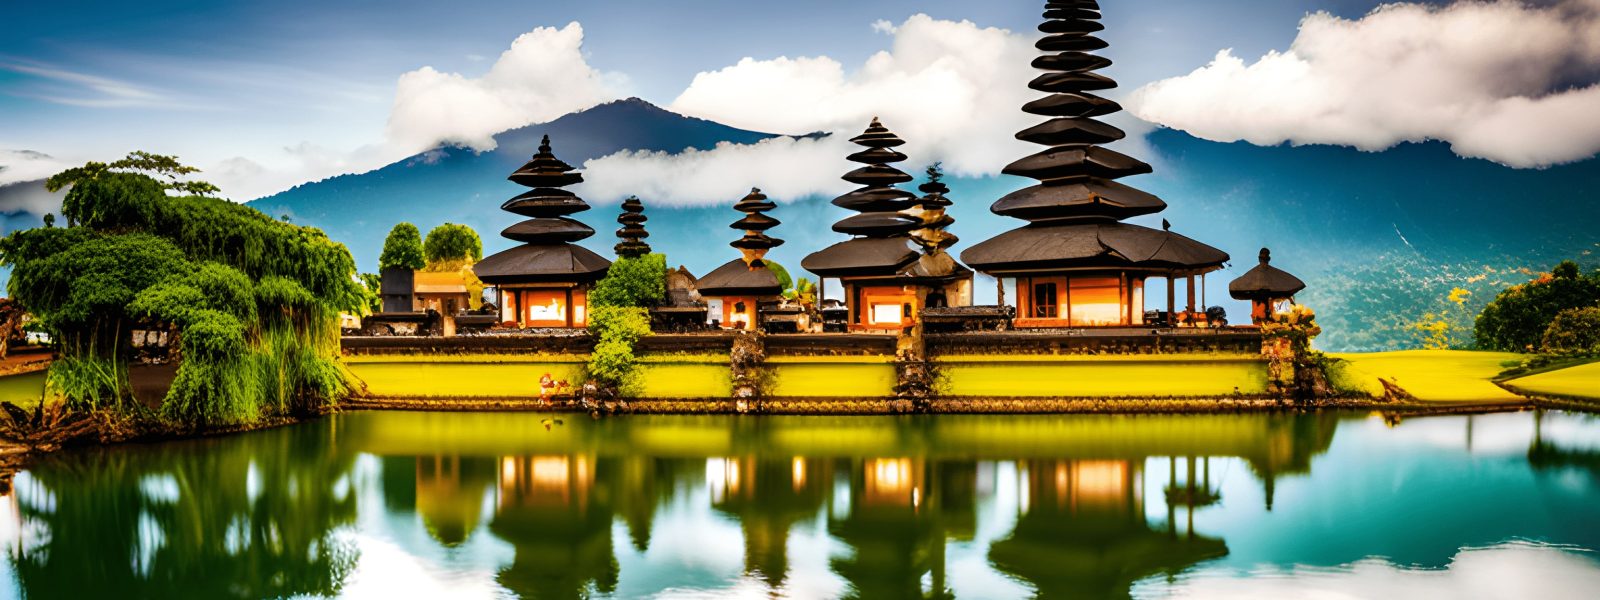 Bali trip cost